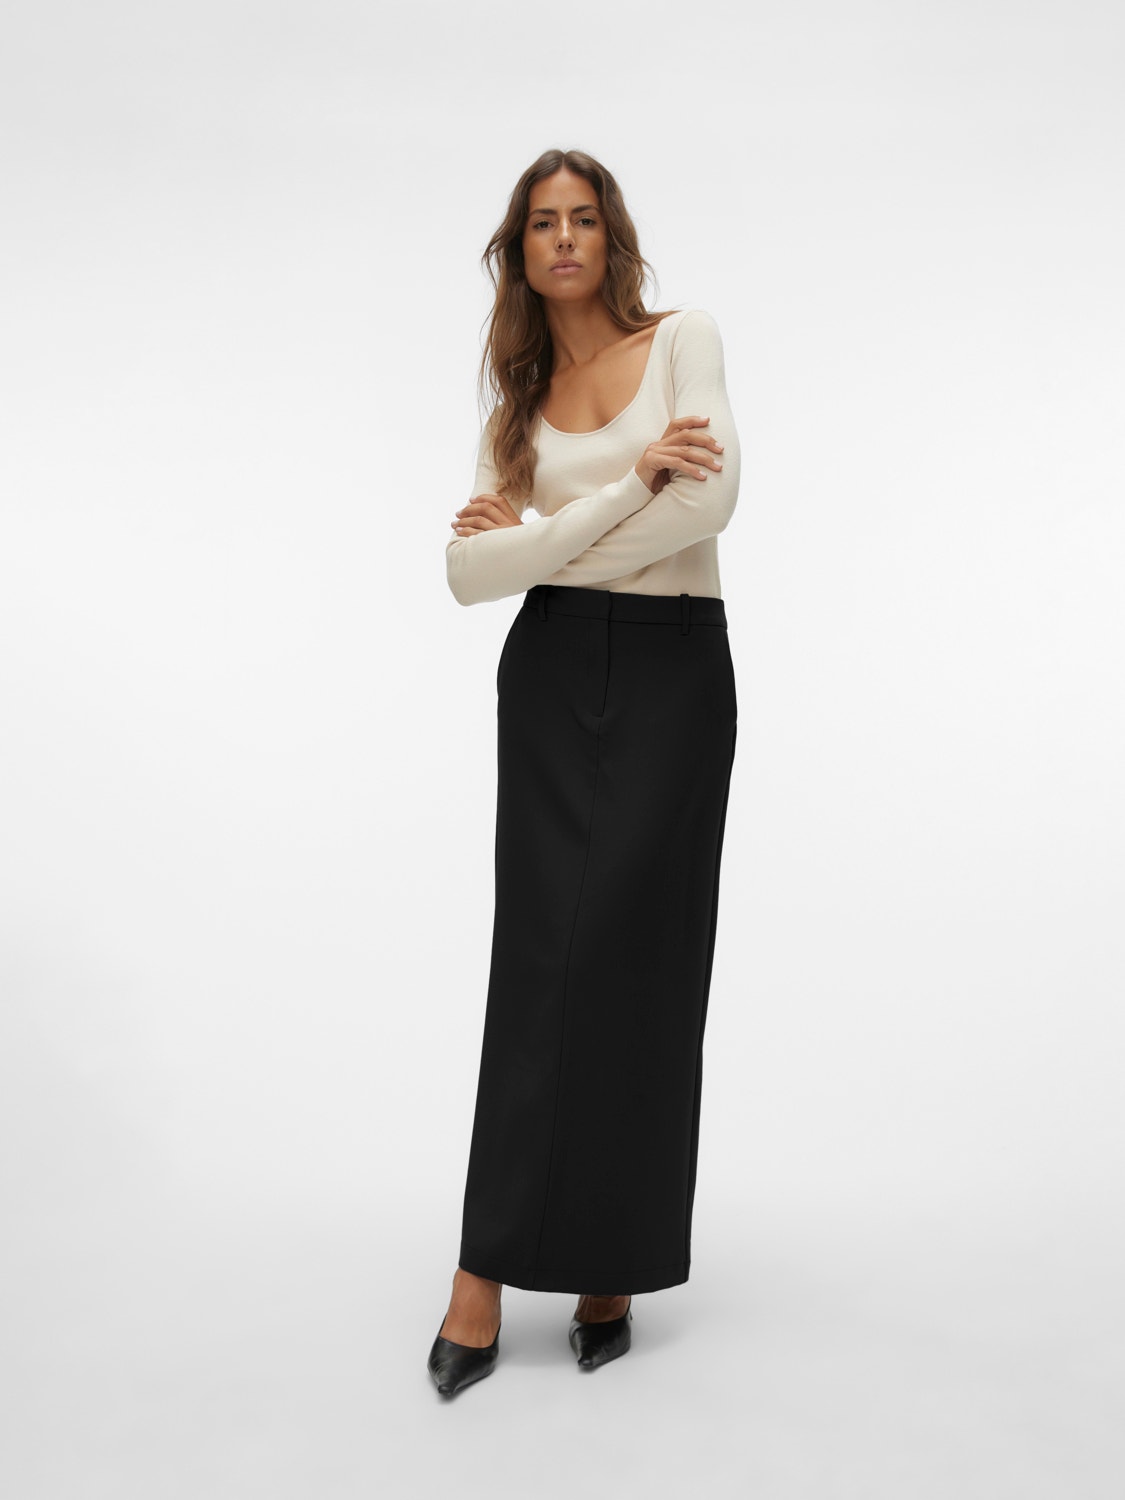 Vero Moda VMMATHILDE Long Skirt -Black - 10299539